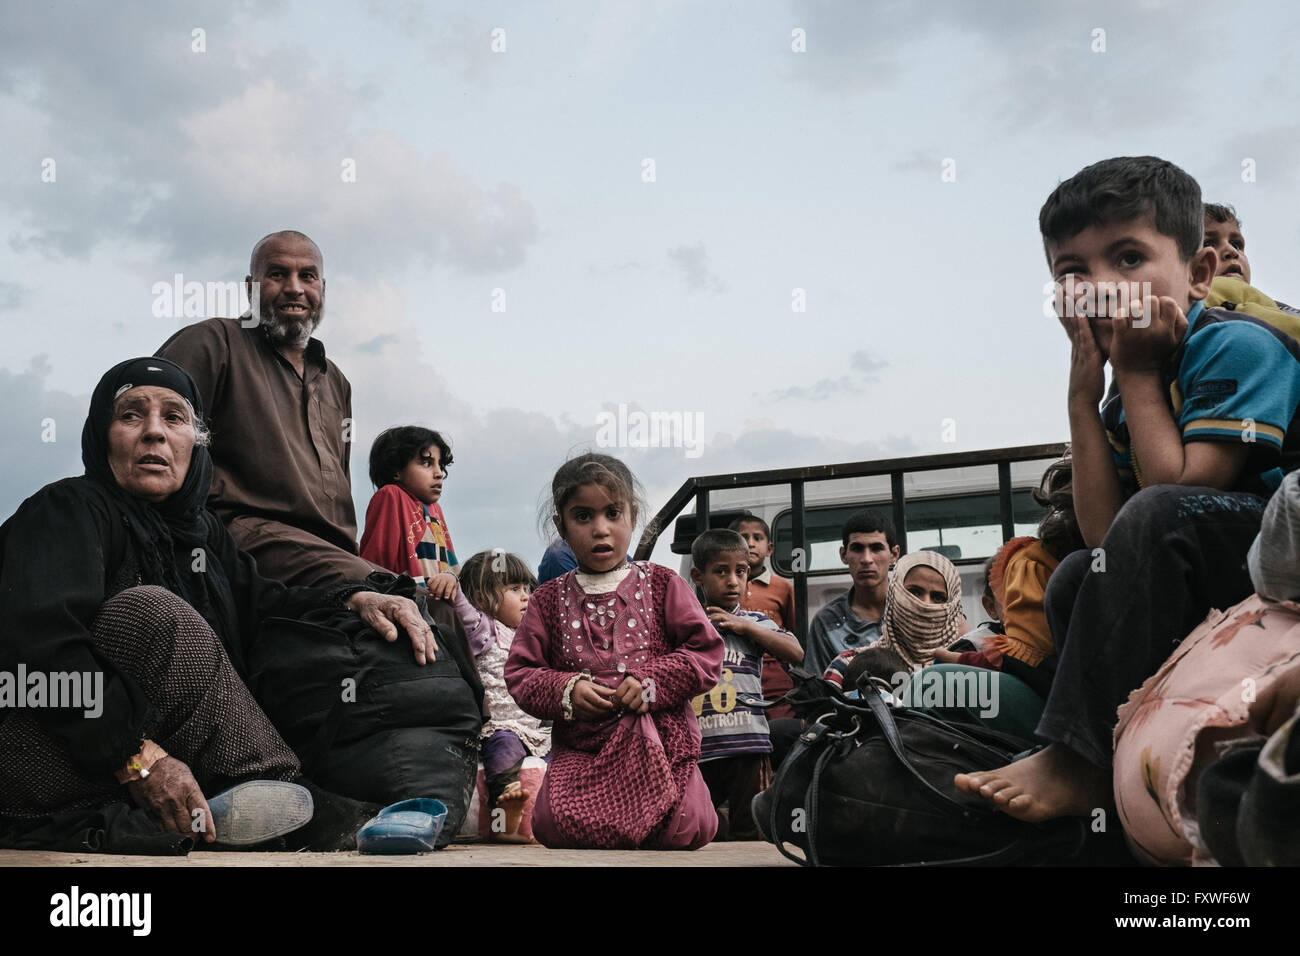 Ayuda Peshmergas refugiees huyendo de Mosul - 07/04/2016 - Irak / Mosul - la gente espera en la furgoneta que les llevará a los refugiados Foto de stock